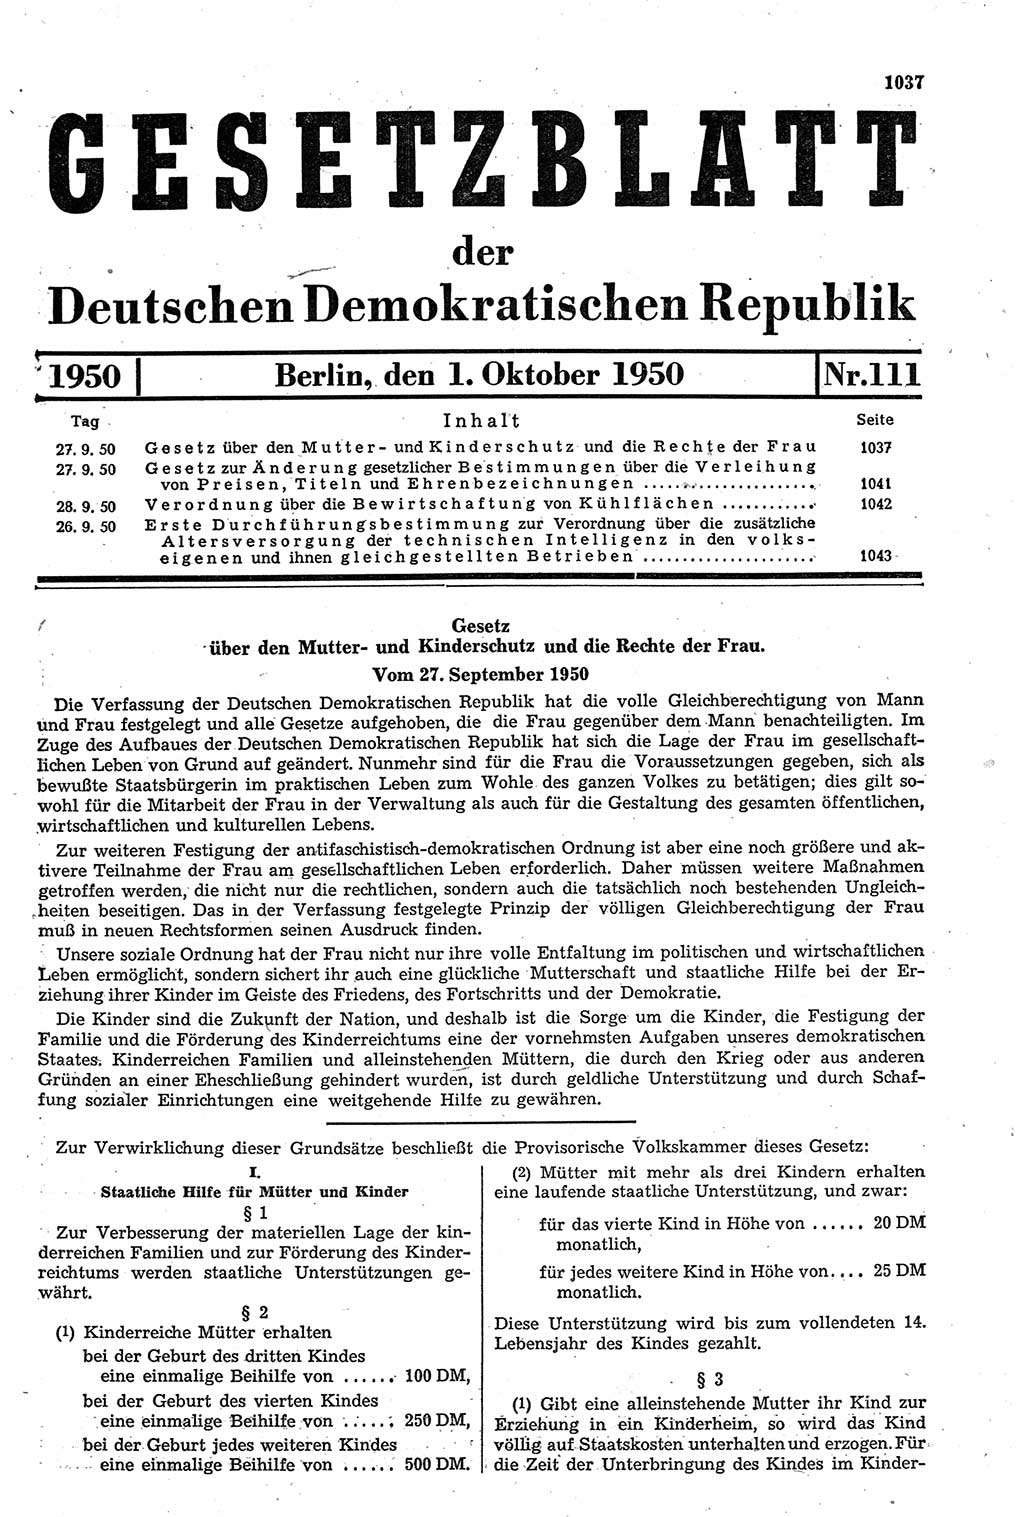 Gesetzblatt (GBl.) der Deutschen Demokratischen Republik (DDR) 1950, Seite 1037 (GBl. DDR 1950, S. 1037)